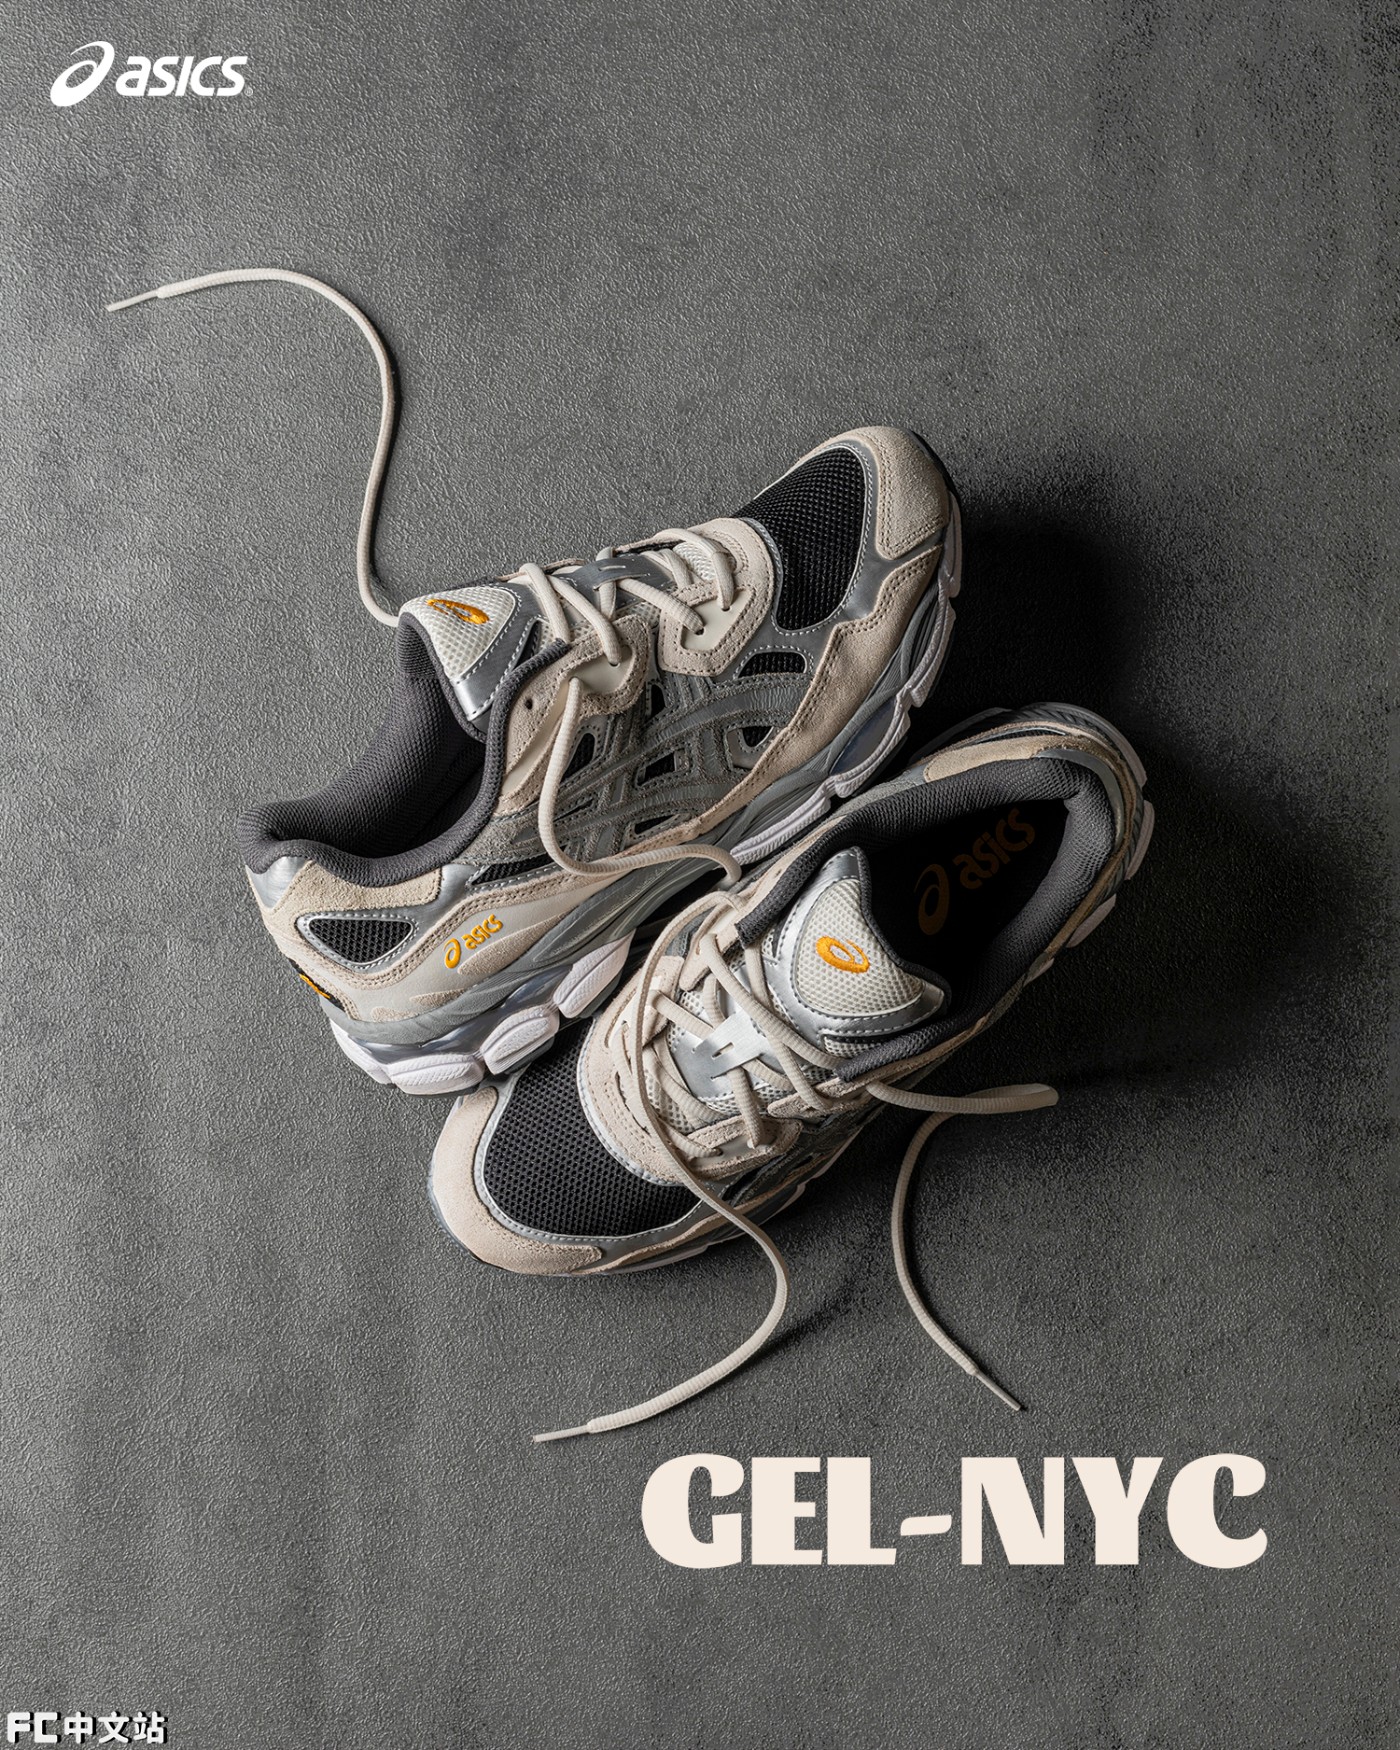 GEL-NYC,ASICS  市价已翻倍！开箱上脚今年又一双「鞋圈黑马」！